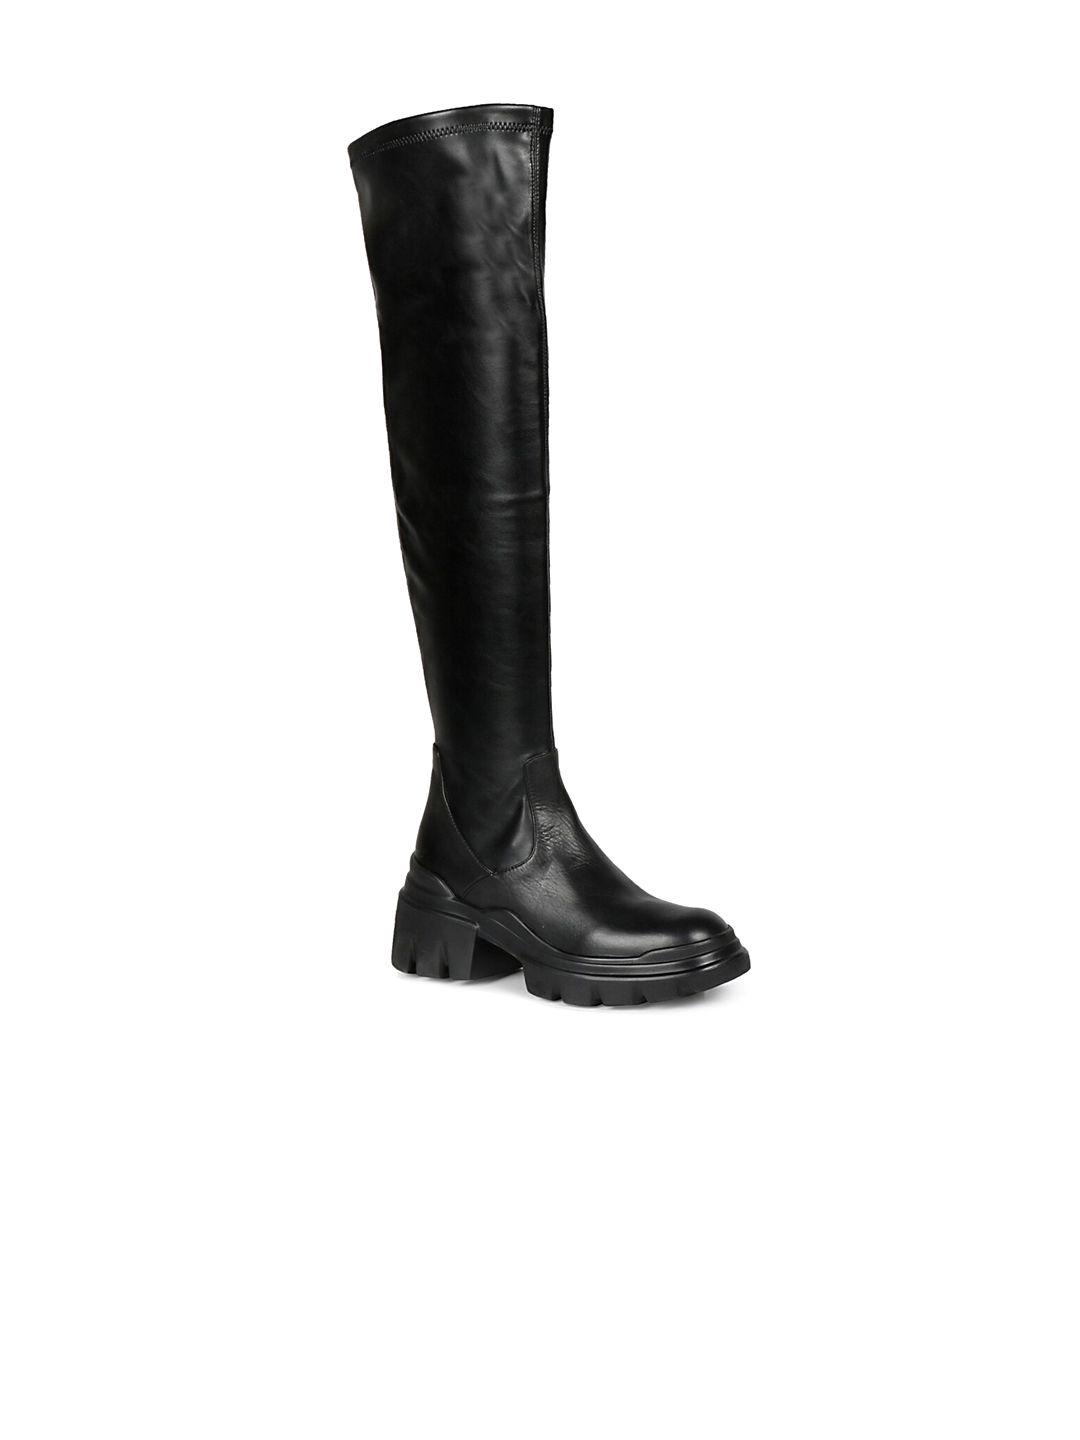 saint-g-women-high-top-leather-regular-boots